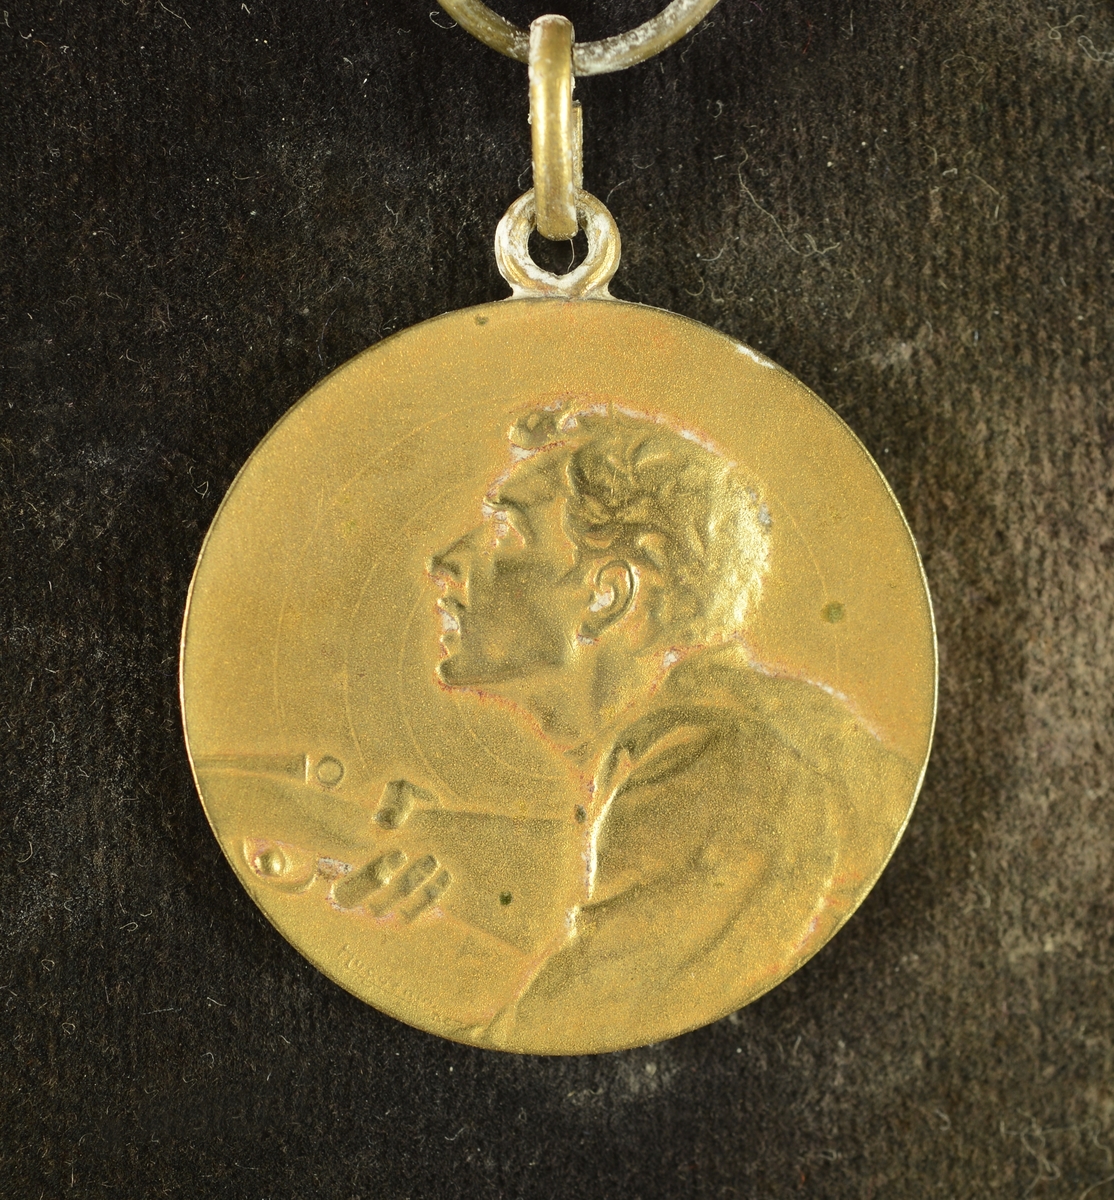 Overkroppen av en person med børse i hånden på framsiden av medaljen.
Bladkrans rundt en inngravert tekst på baksiden av medaljen.